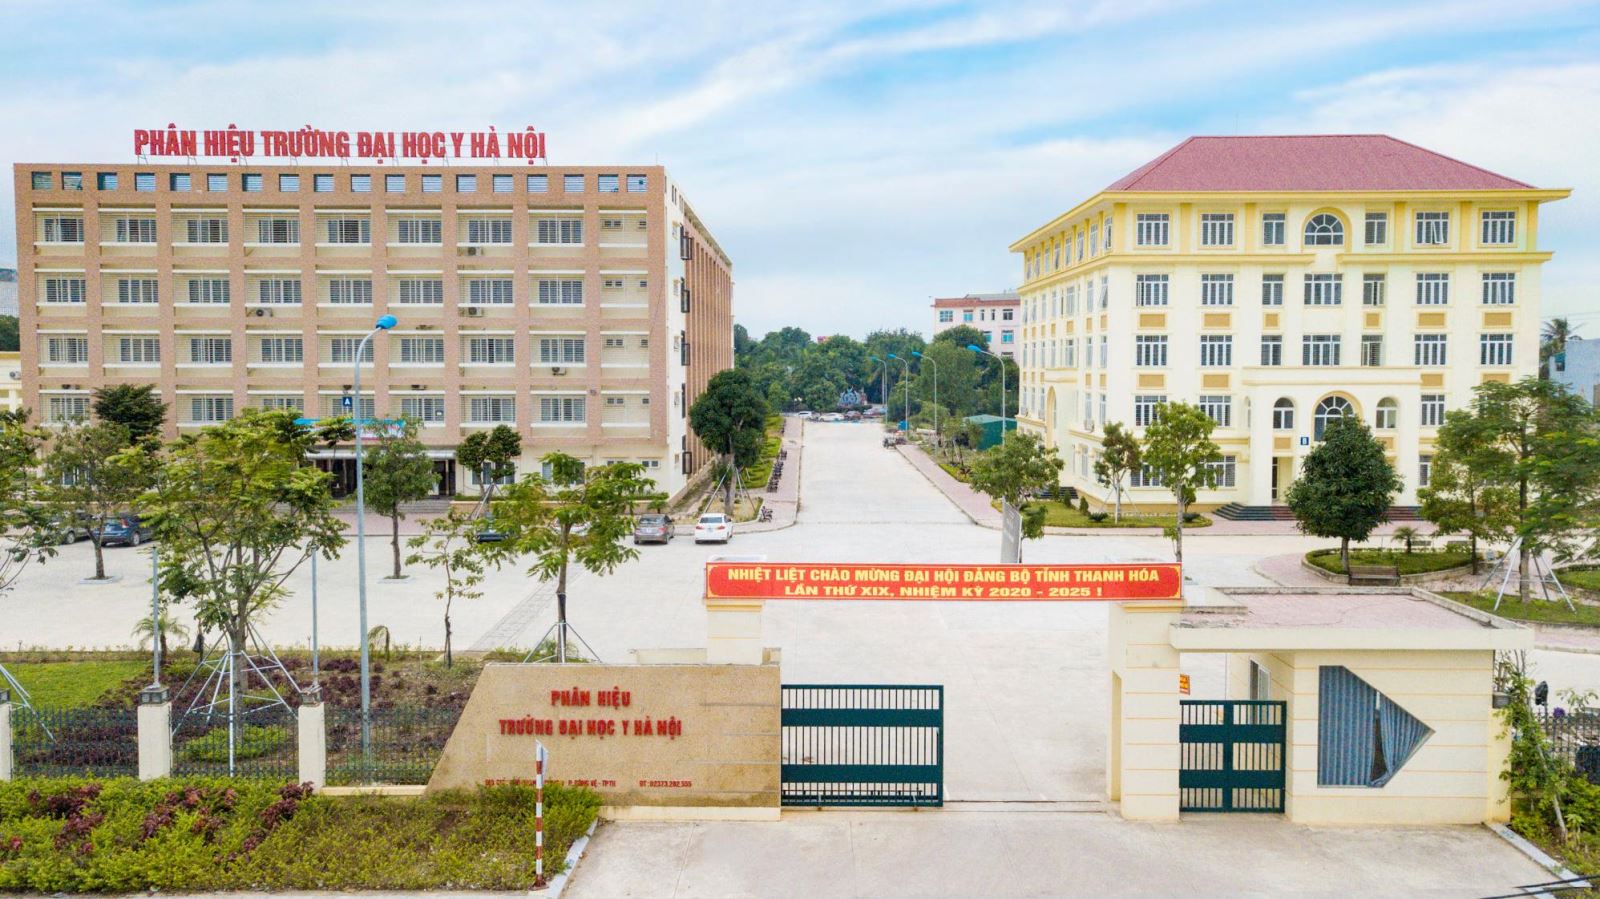 Thông tin cơ bản về 04 ngành đại học chính quy “Siêu hót” đào tạo tại Phân hiệu Trường Đại học Y Hà Nội tại Thanh Hóa